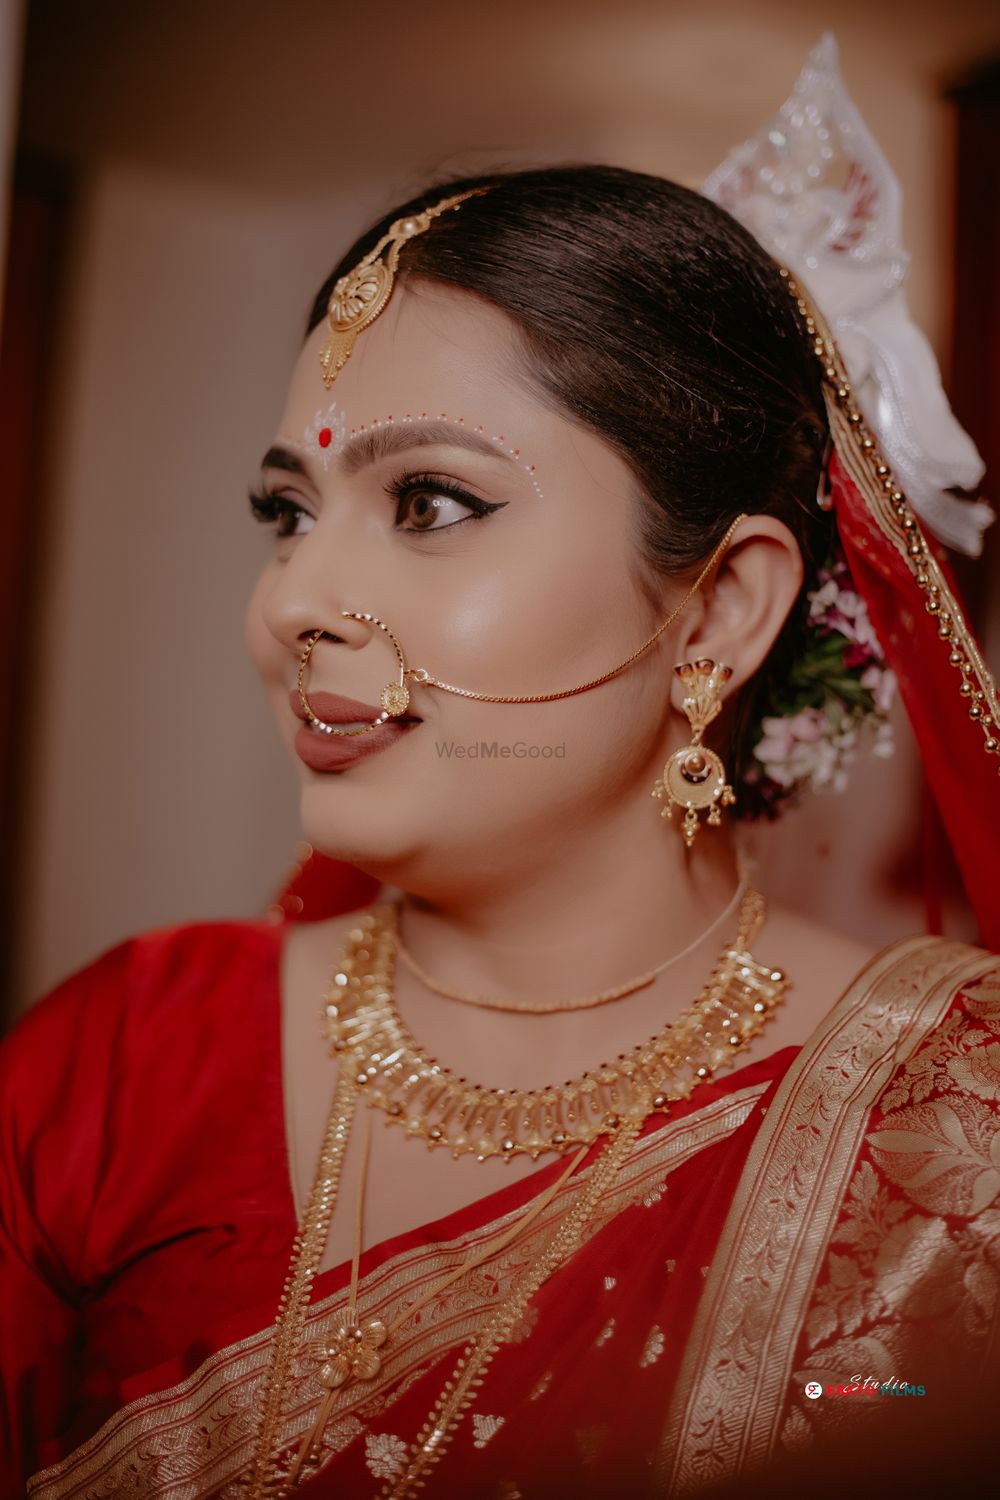 Photo By Natasha Sharma Makeover - Bridal Makeup